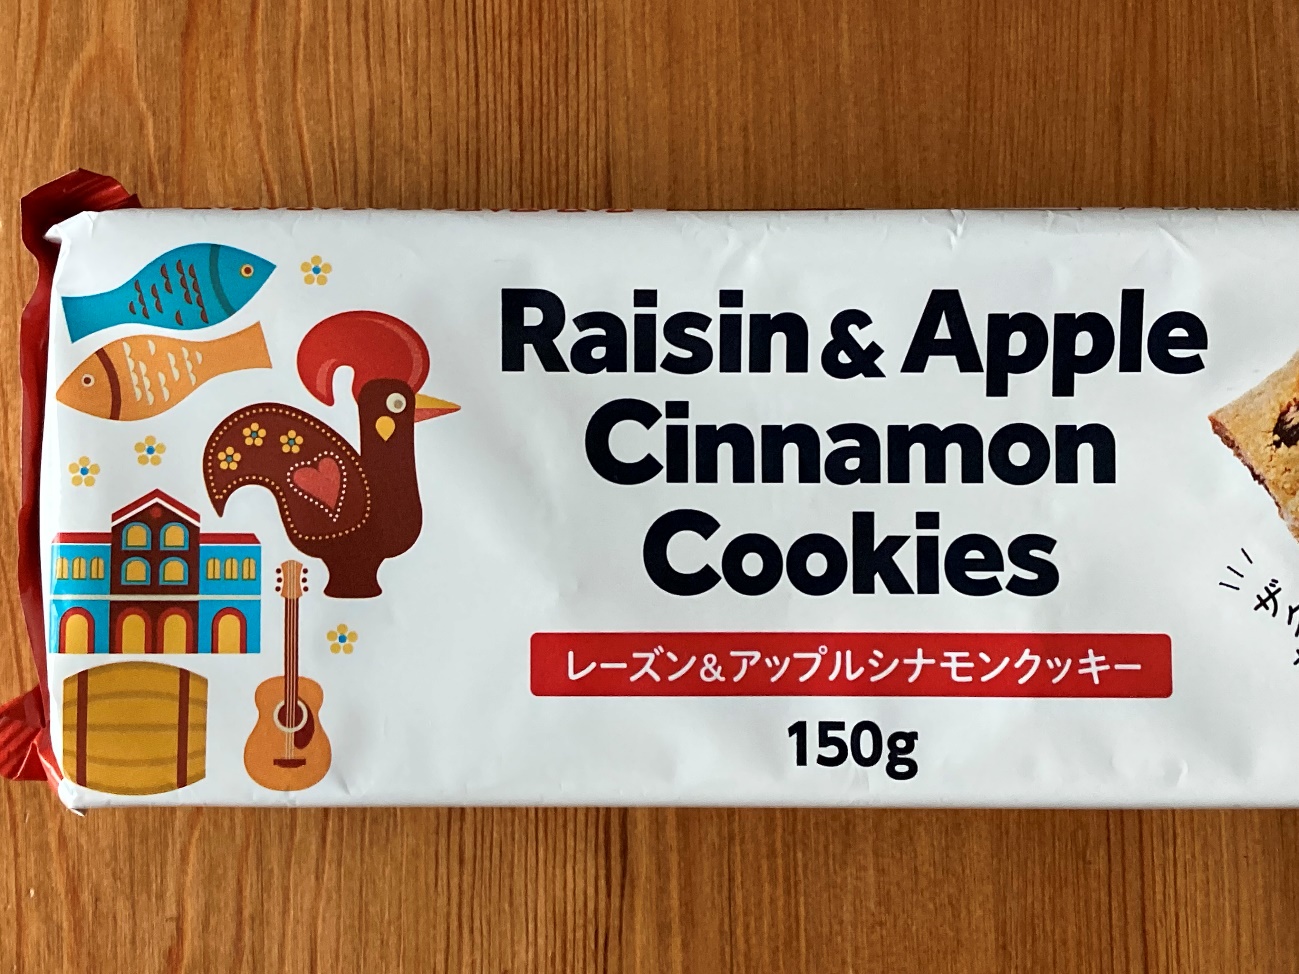 業務スーパーのレーズン&アップルシナモンクッキーのパッケージにある商品名表記